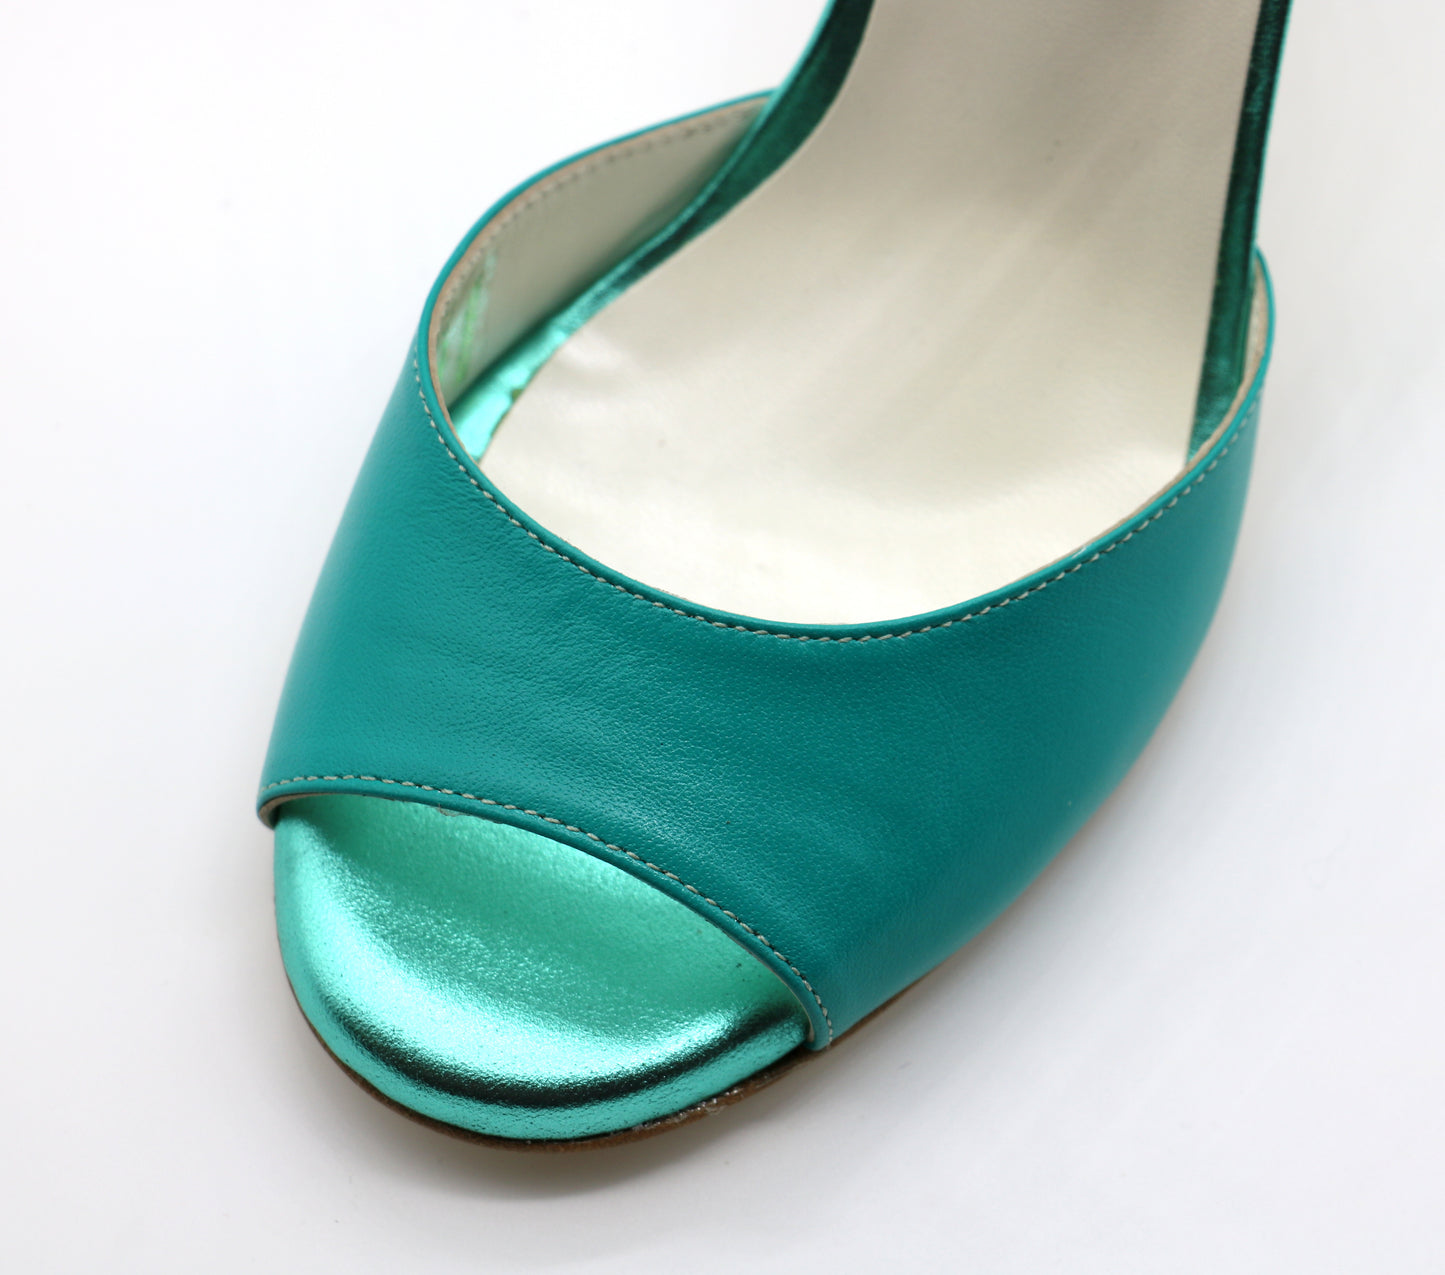 Uno Duck Green heels 8cm